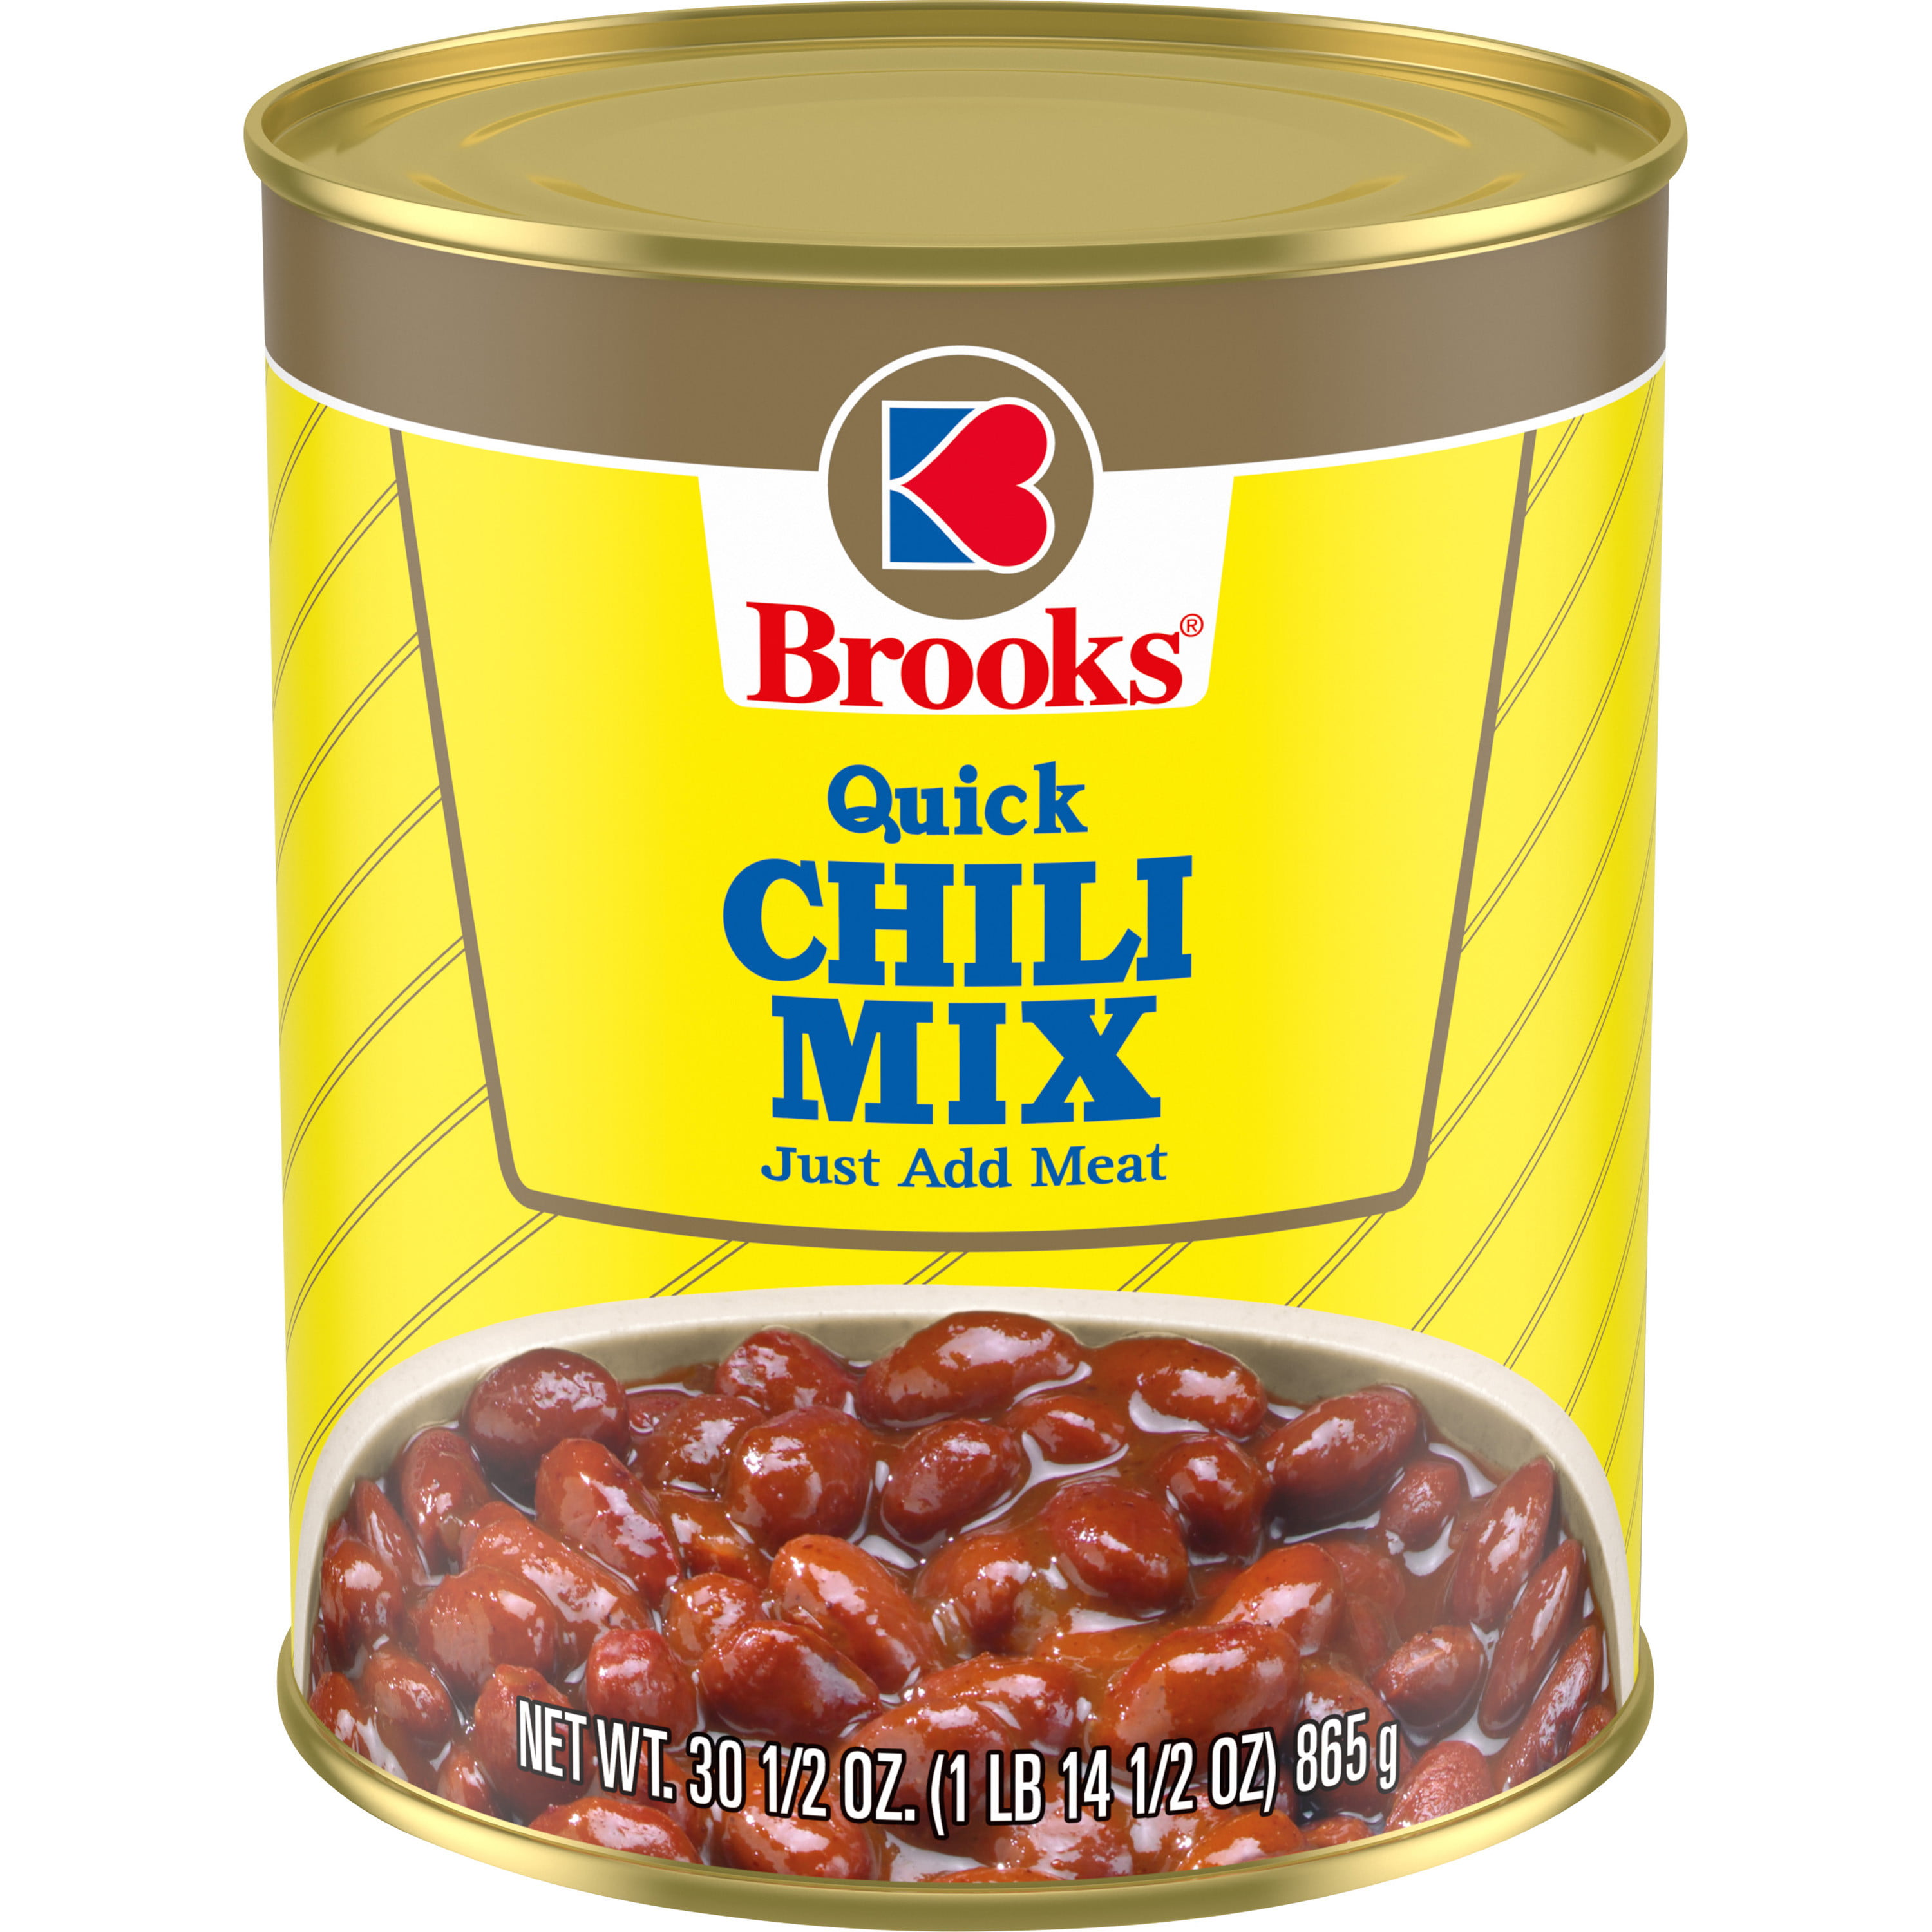 Brooks Quick Chili Mix Just Add Meat 30 5 Oz Walmart Com Walmart Com